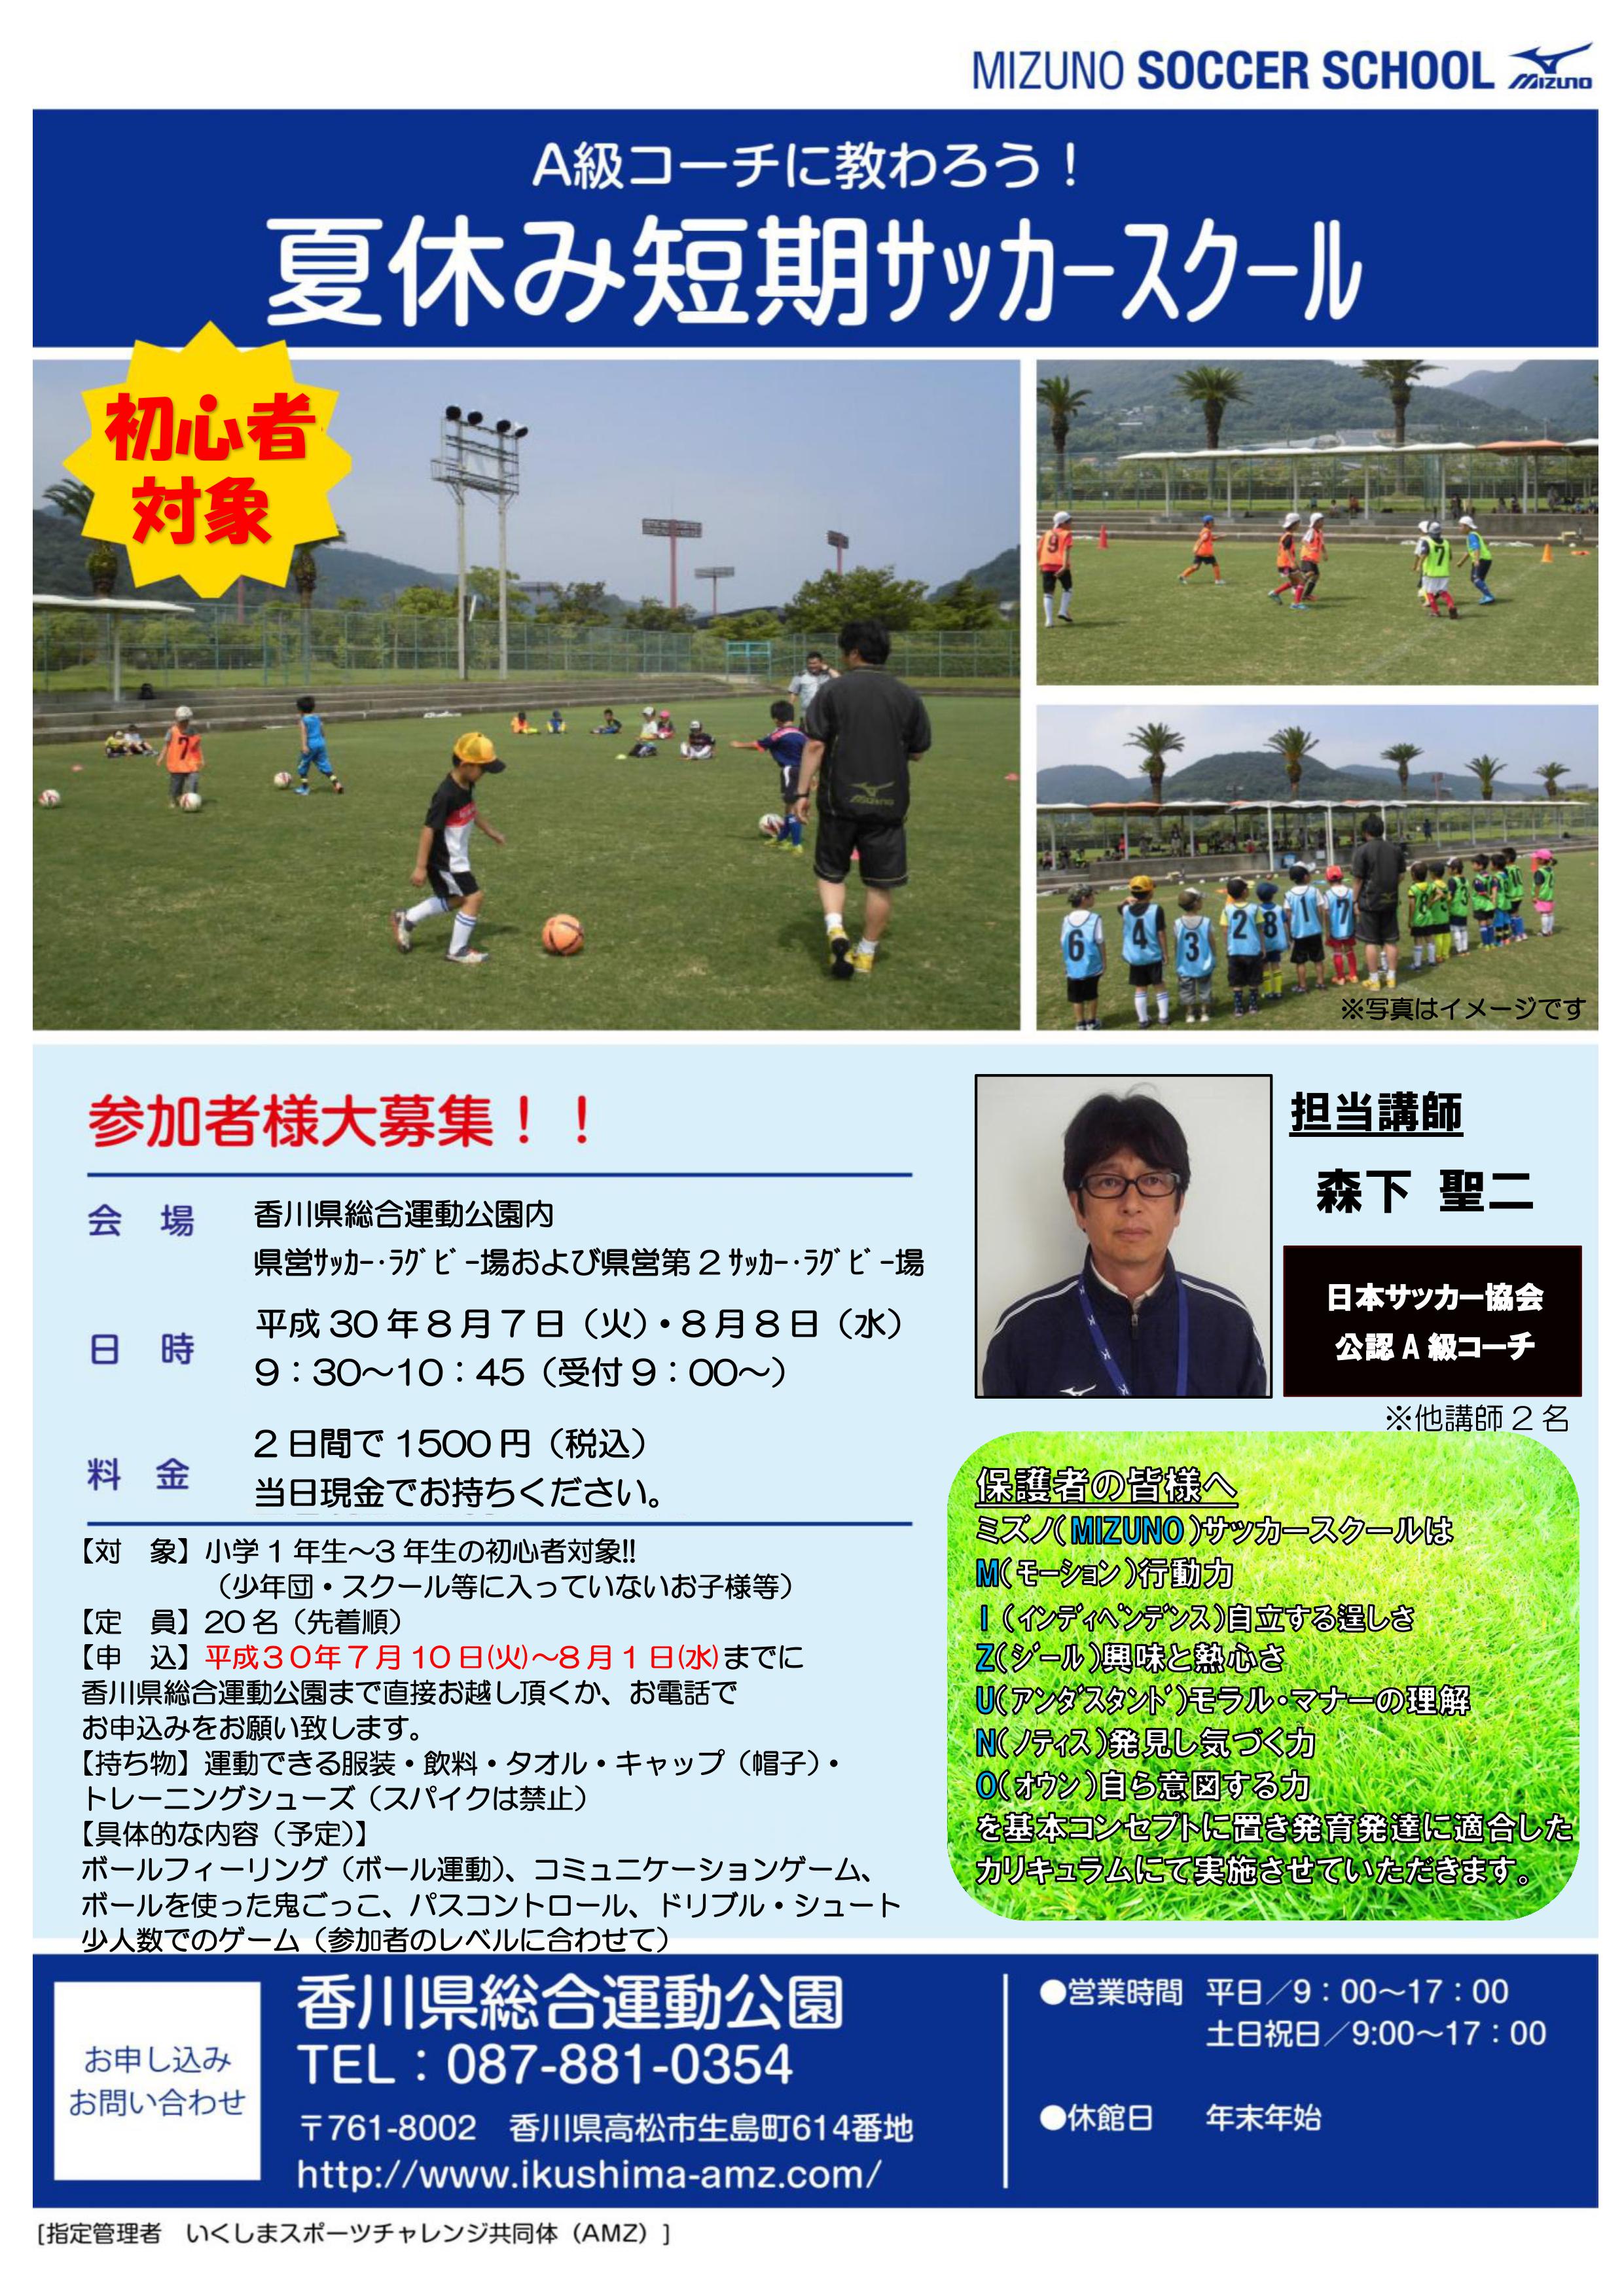 夏休み短期サッカースクール開催ご案内 香川県総合運動公園 いくしまスポーツチャレンジ共同体